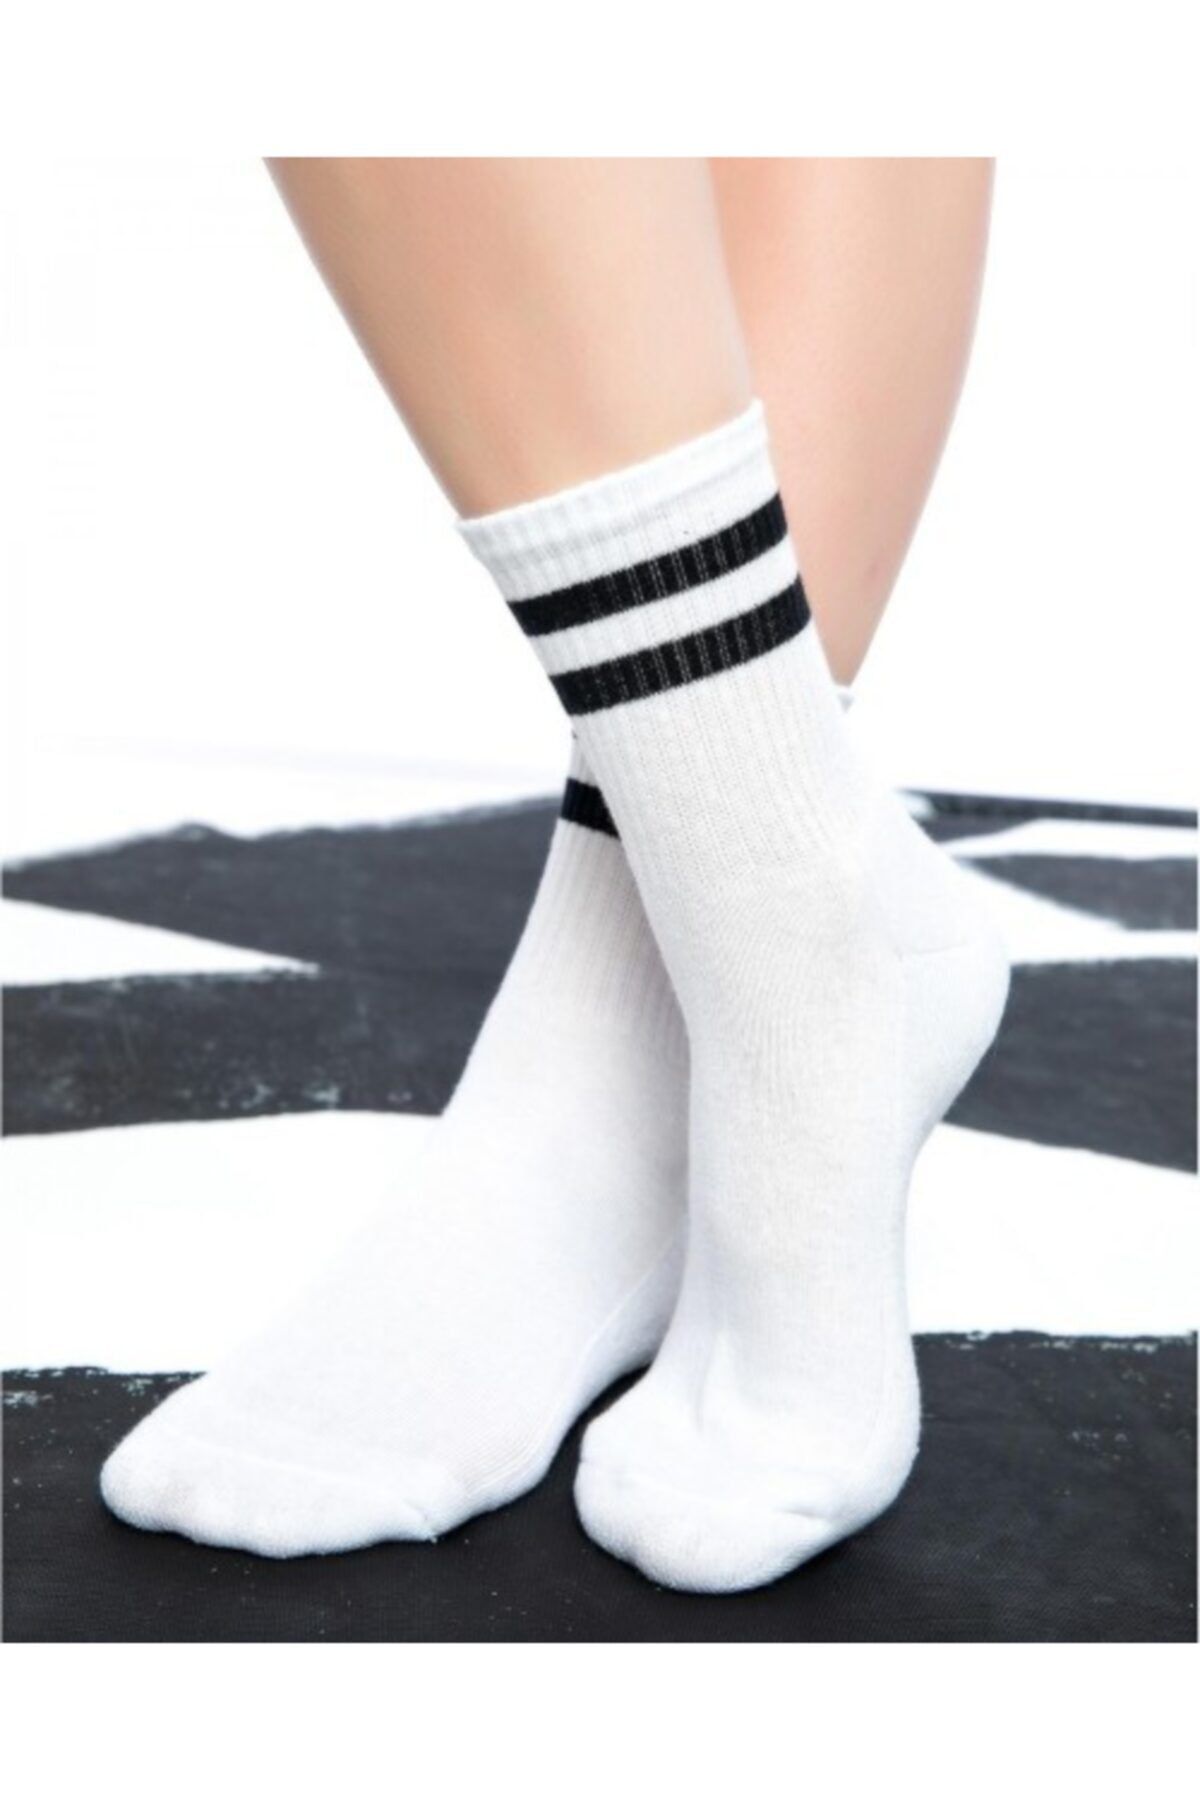 çorapdunyam Çorap Unisex Siyah Beyaz Renkli Çizgili Kolej Tenis Çorabı Çp4155